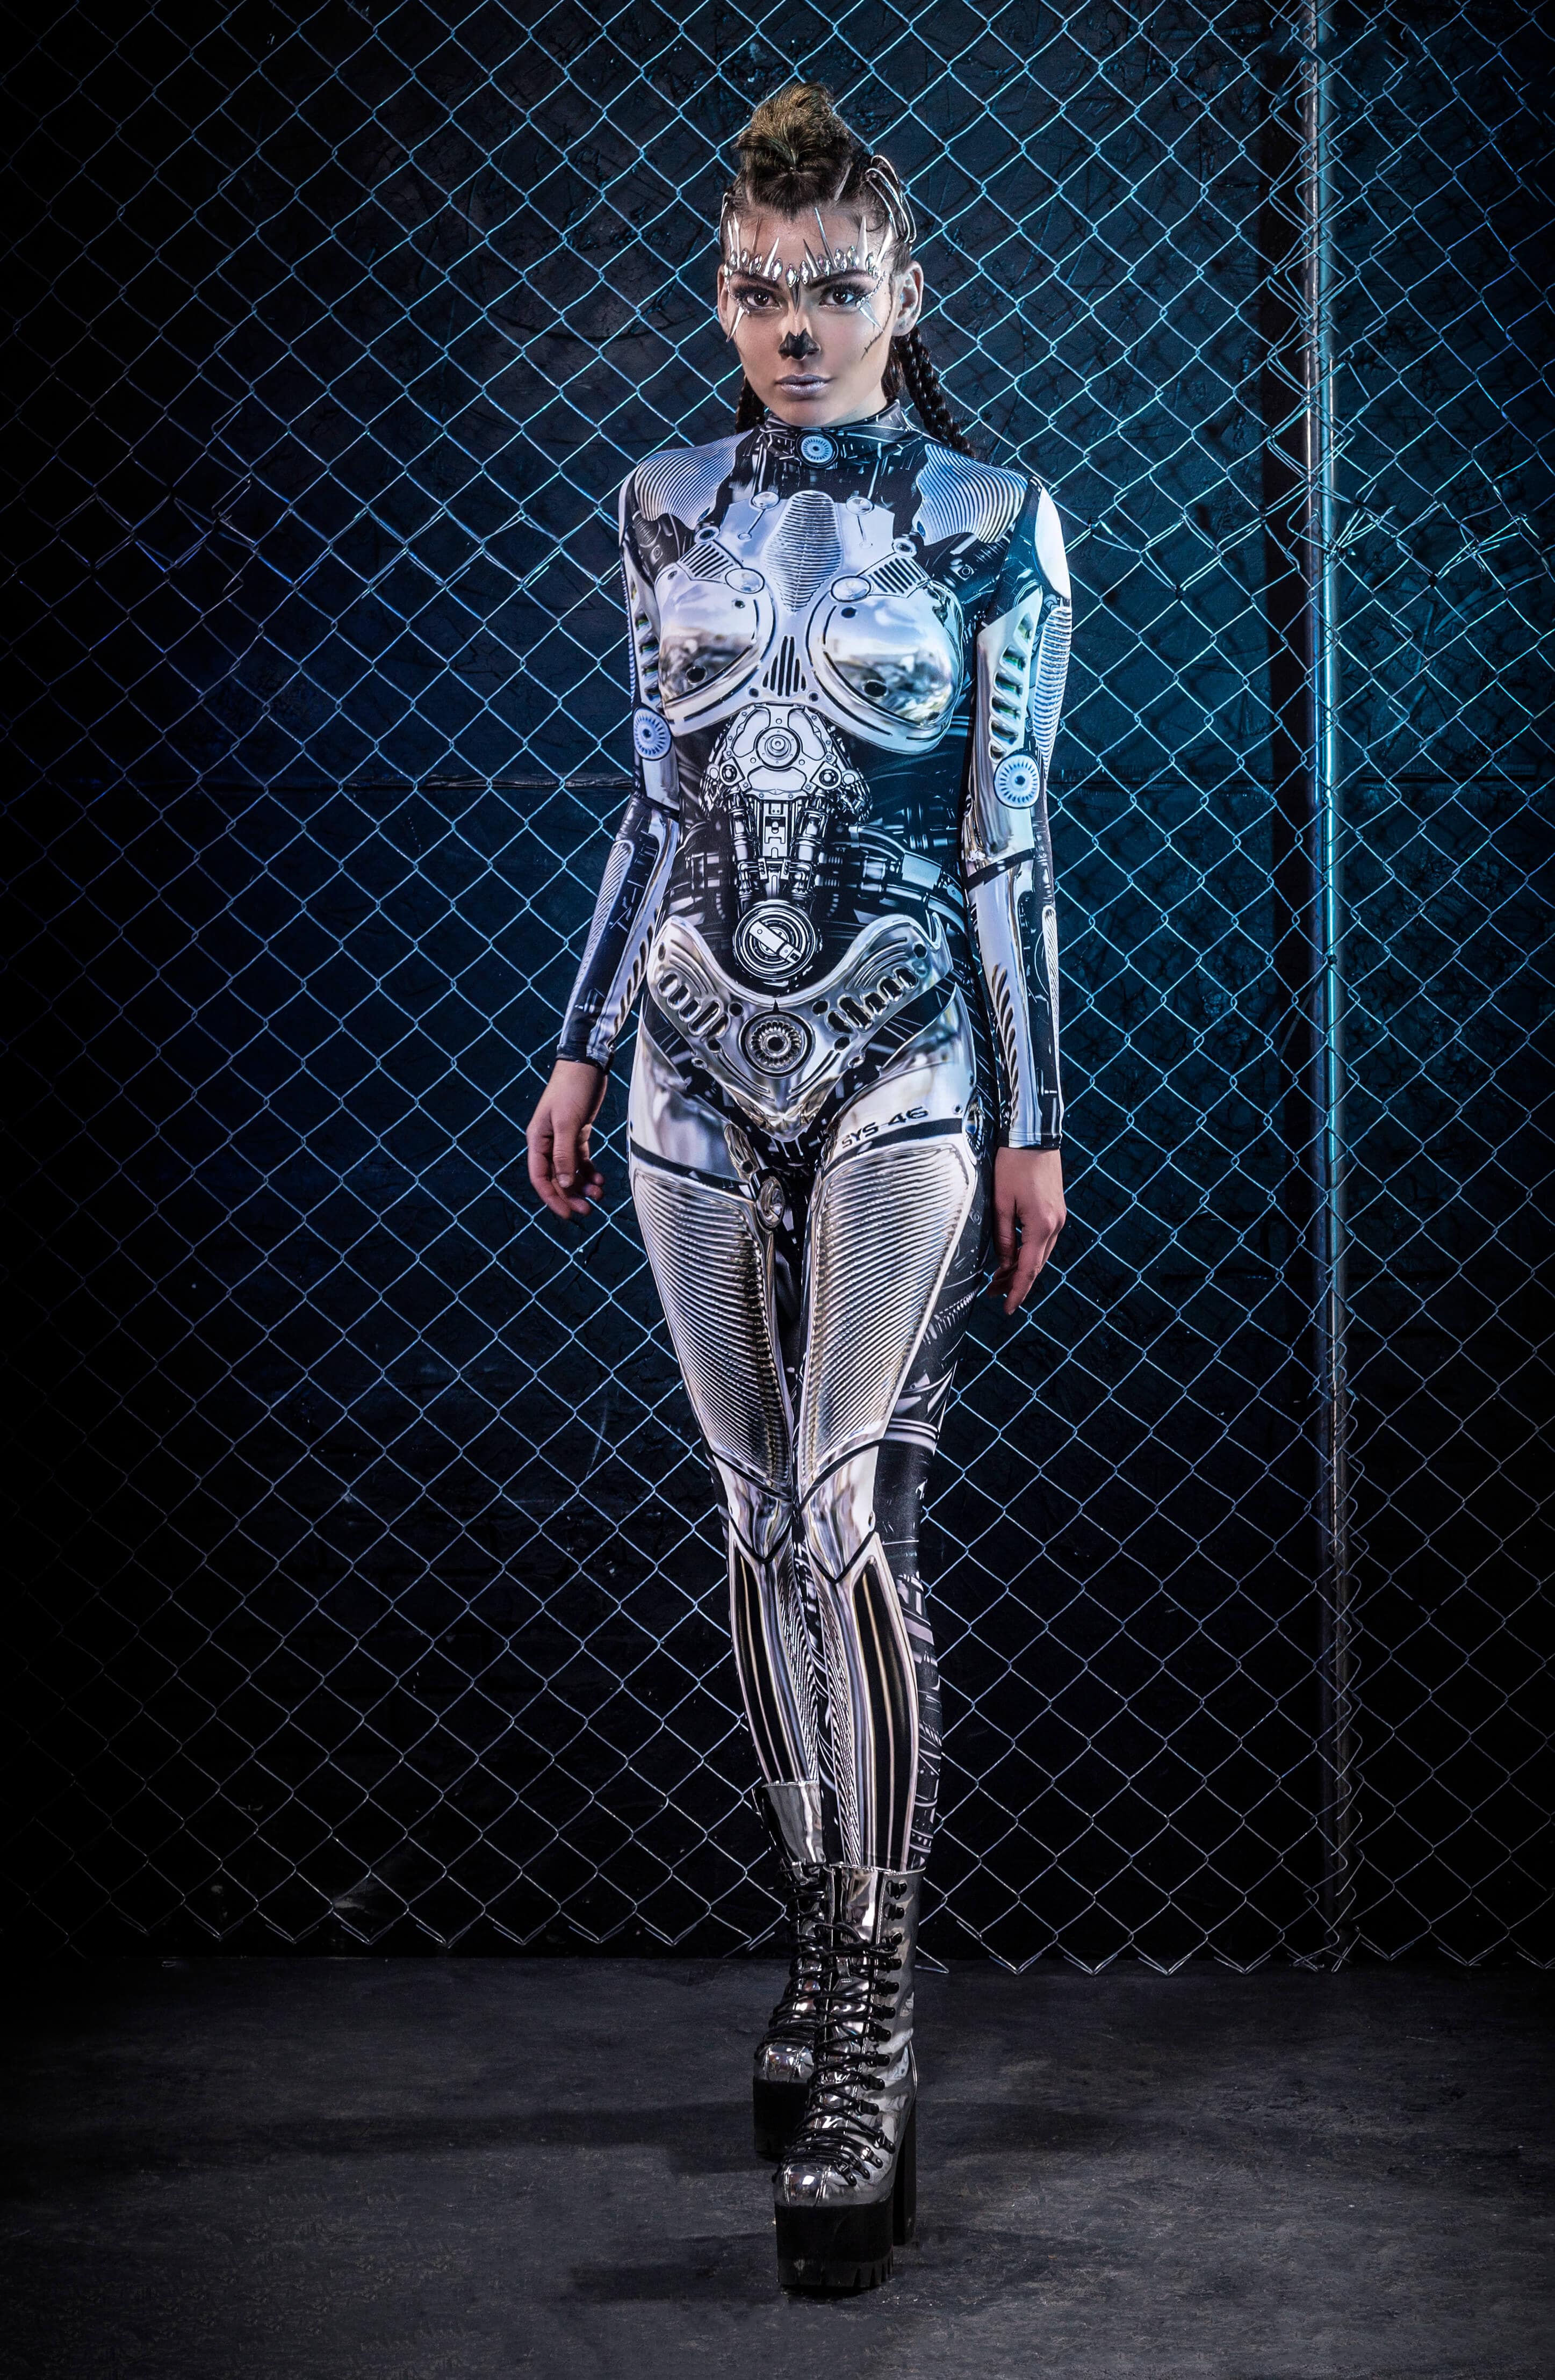 Warbot System 46 Costume Bodysuit >> BADINKA